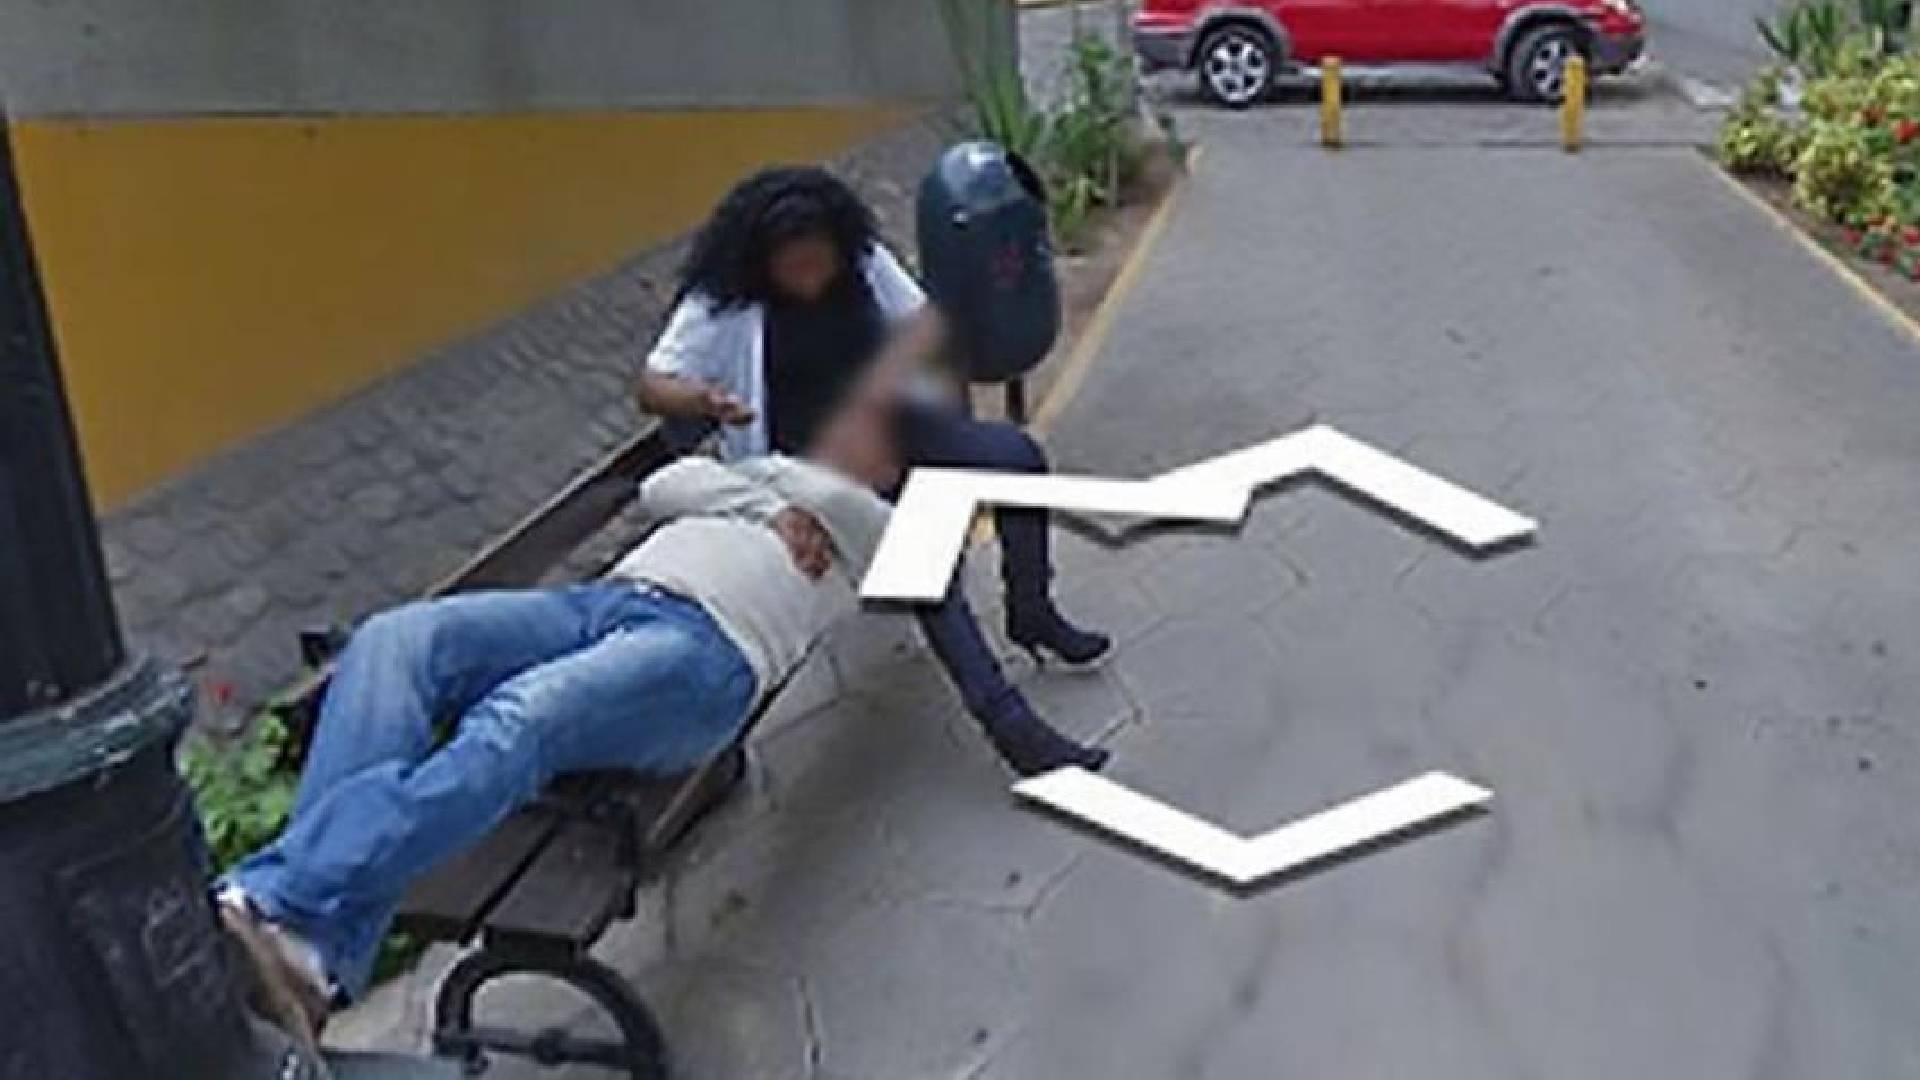 Una mujer descubre infidelidad por Google Maps en un estado de Brasil.